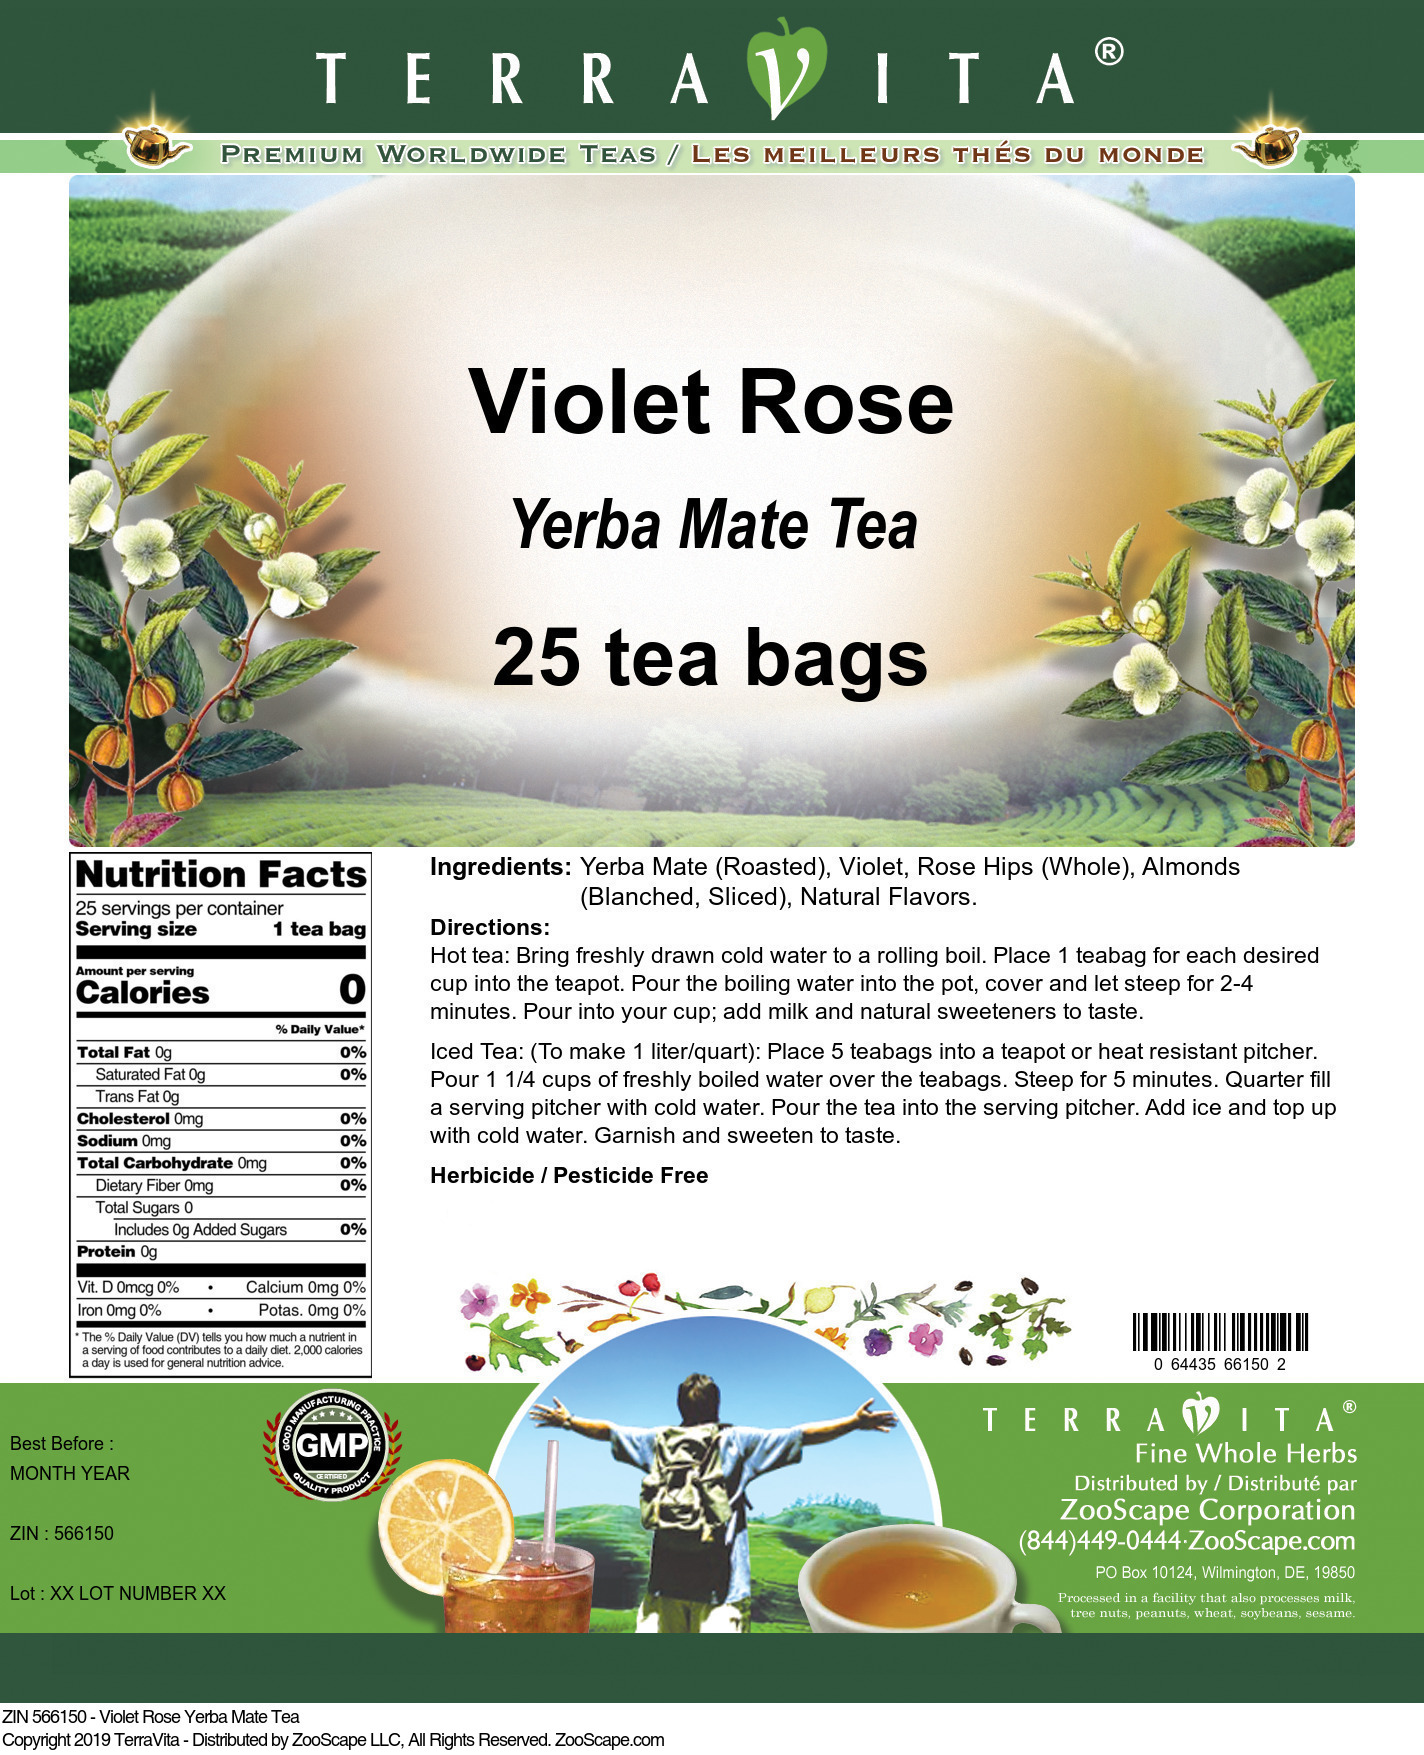 Violet Rose Yerba Mate Tea - Label